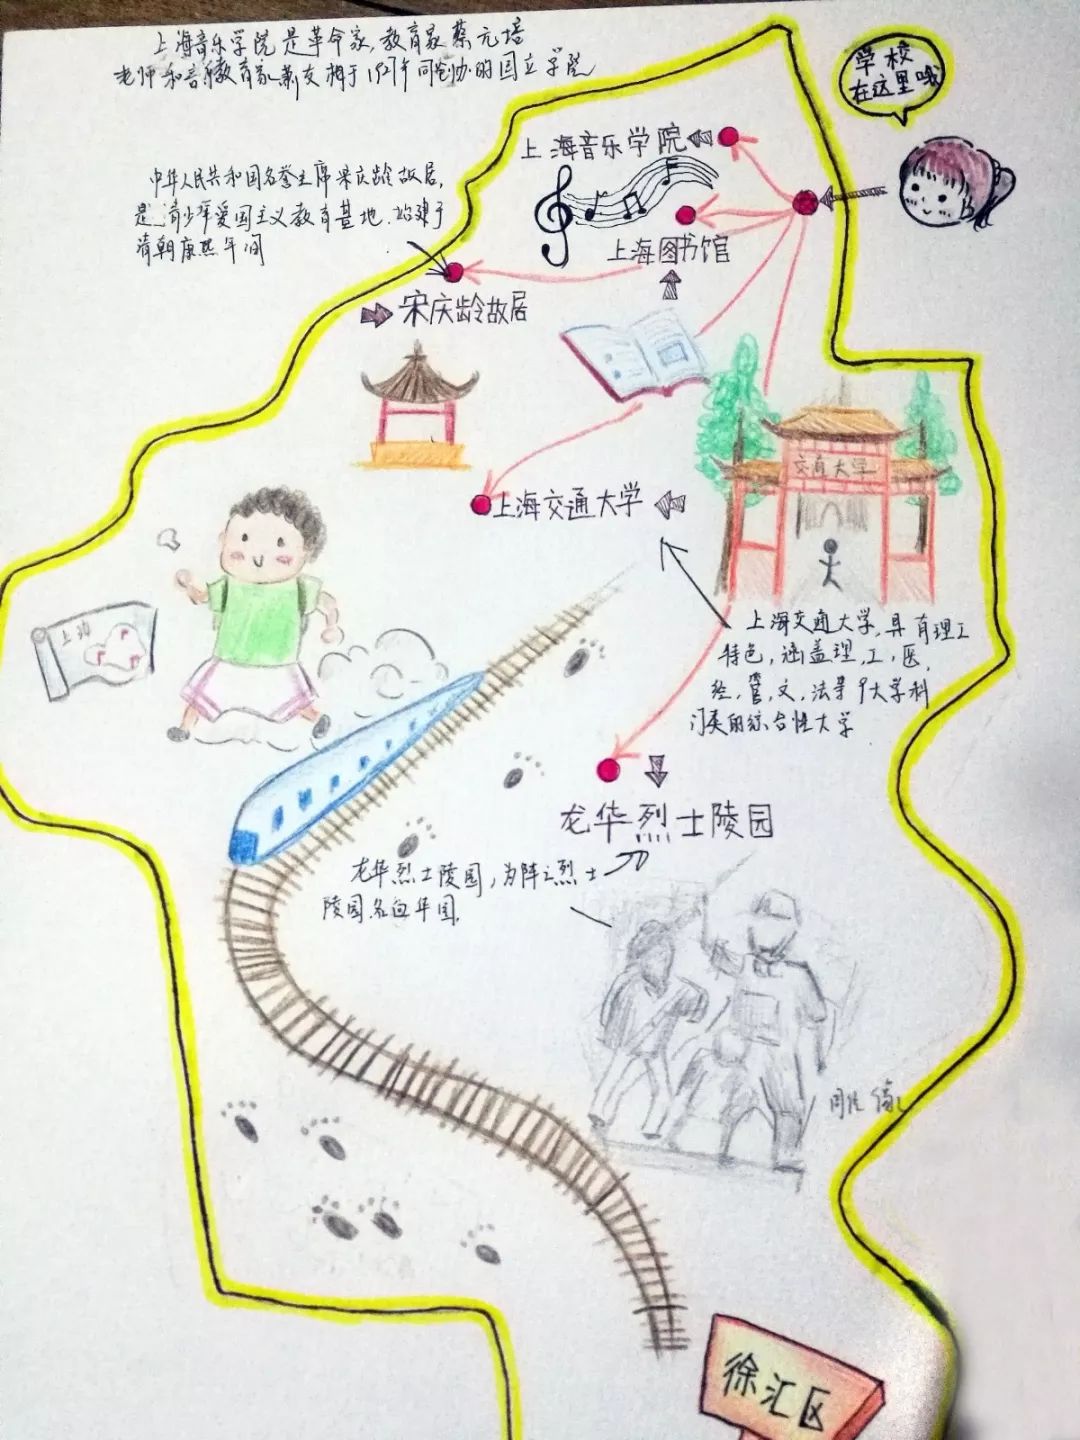 【礼赞70年】徐汇小囡手绘旅游地图~这些红色线路,你认识吗?